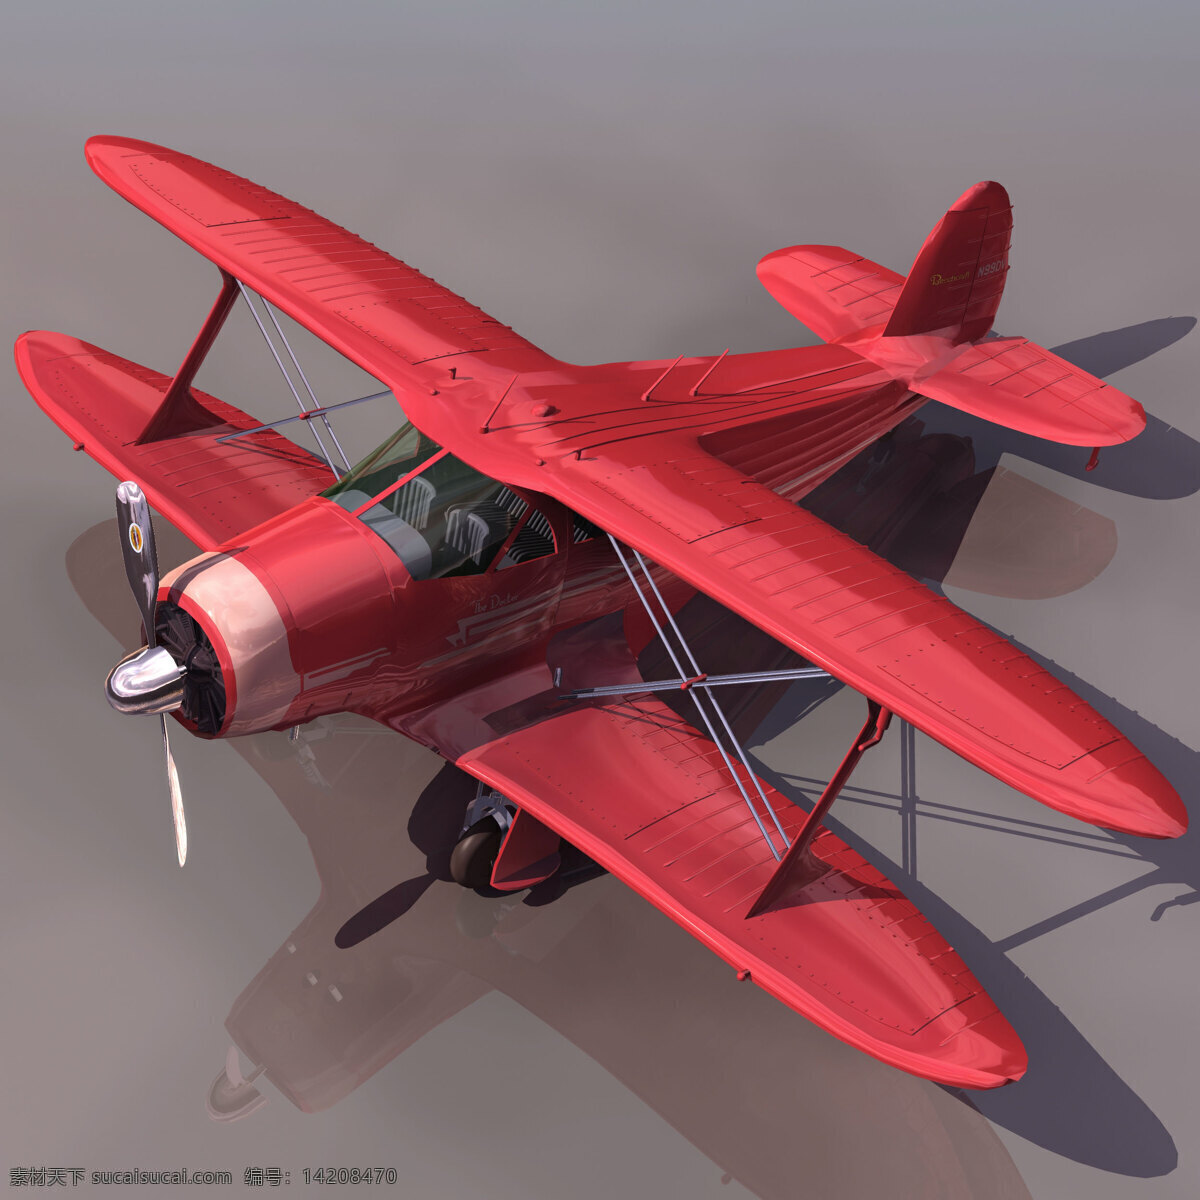 飞机模型 g17s 民用飞机 3d模型素材 电器模型